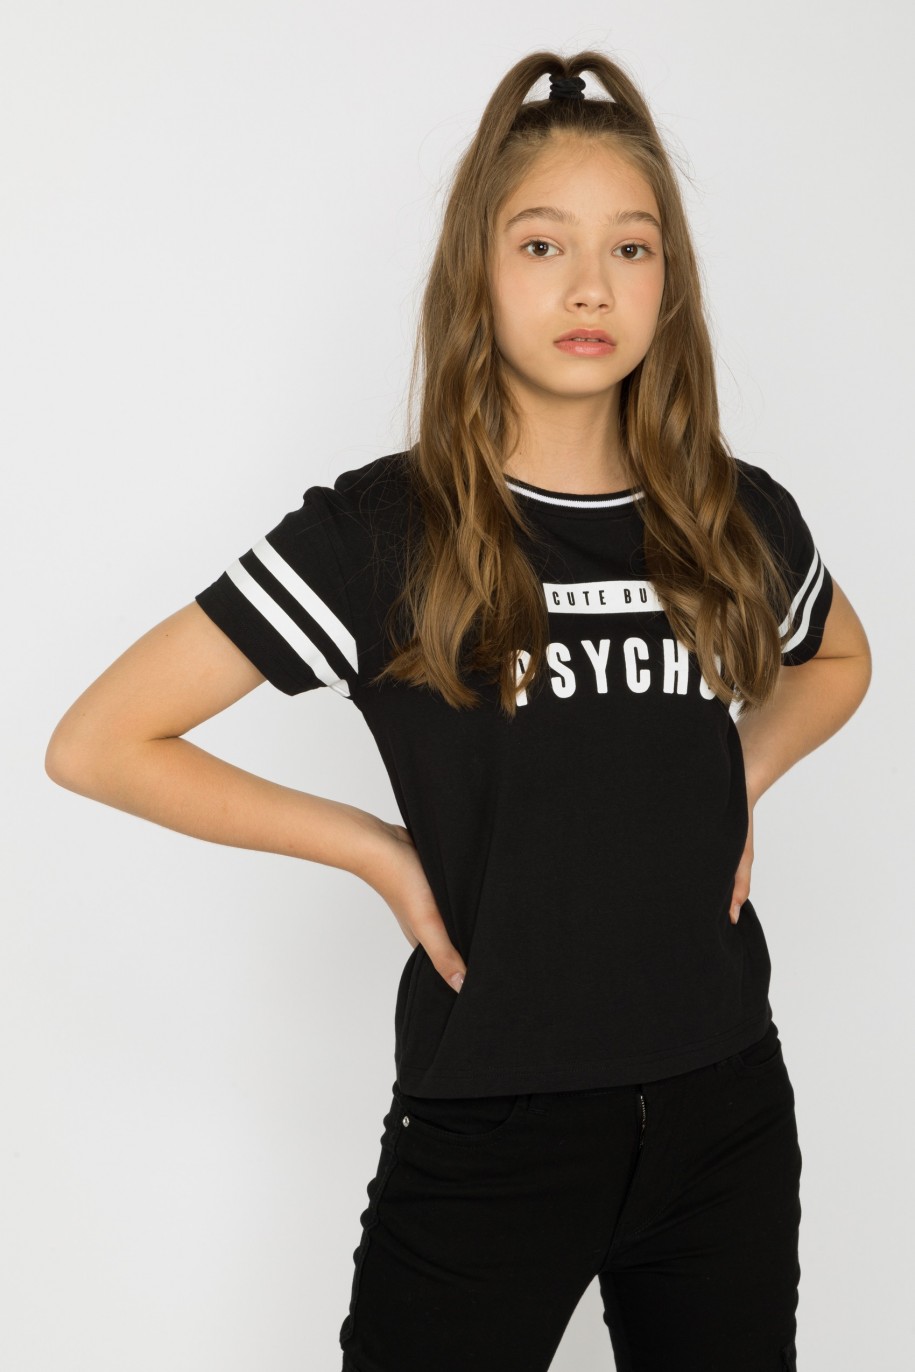 Czarny t-shirt dla dziewczyny z ozdobnymi rękawami CUTE BY PSYCHO - 28832